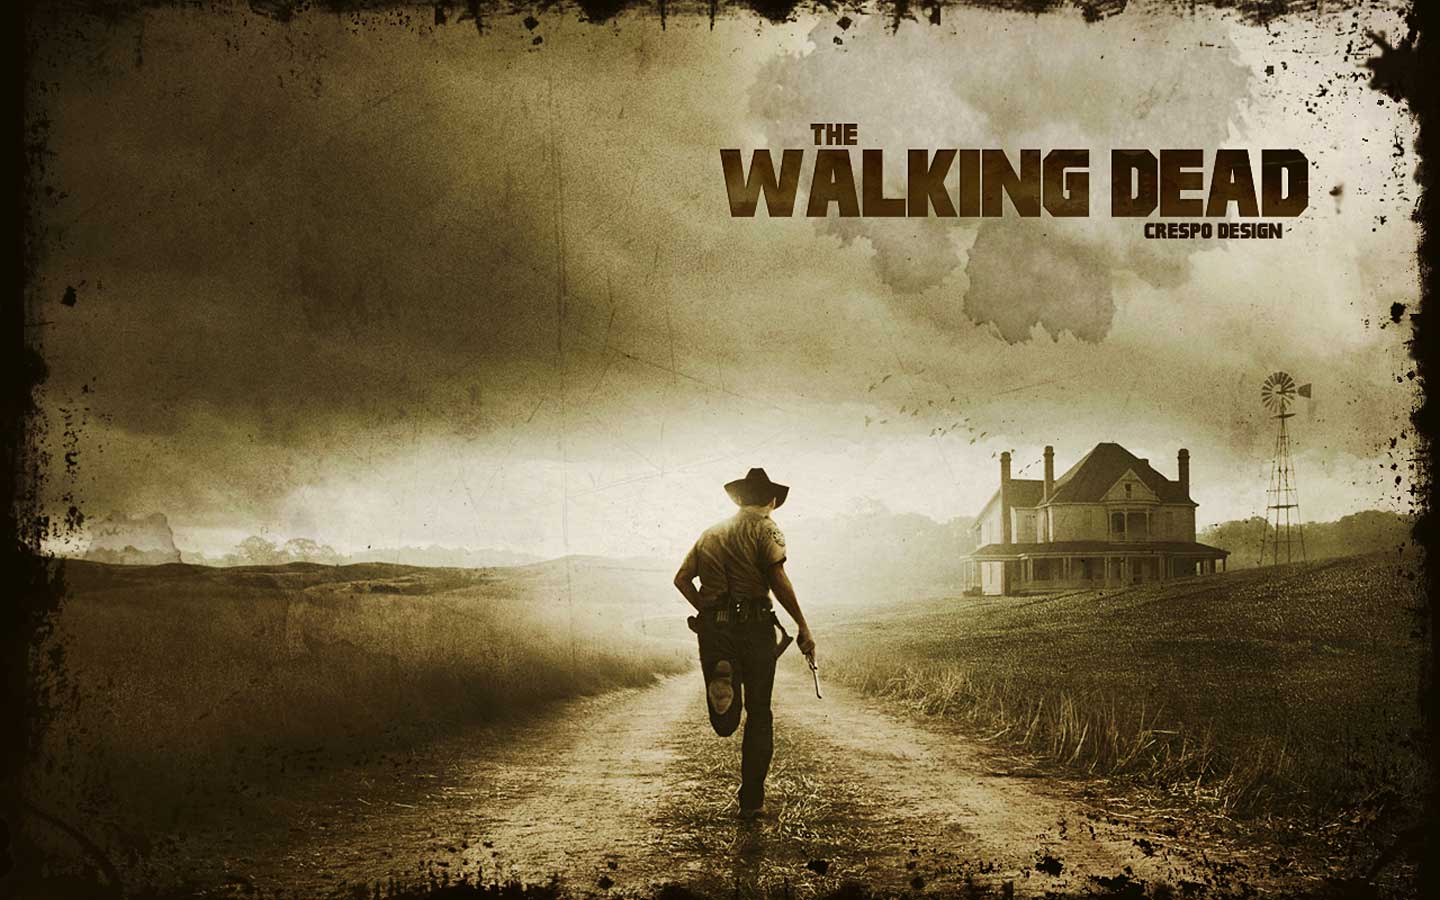 Walking Dead HD Wallpaper